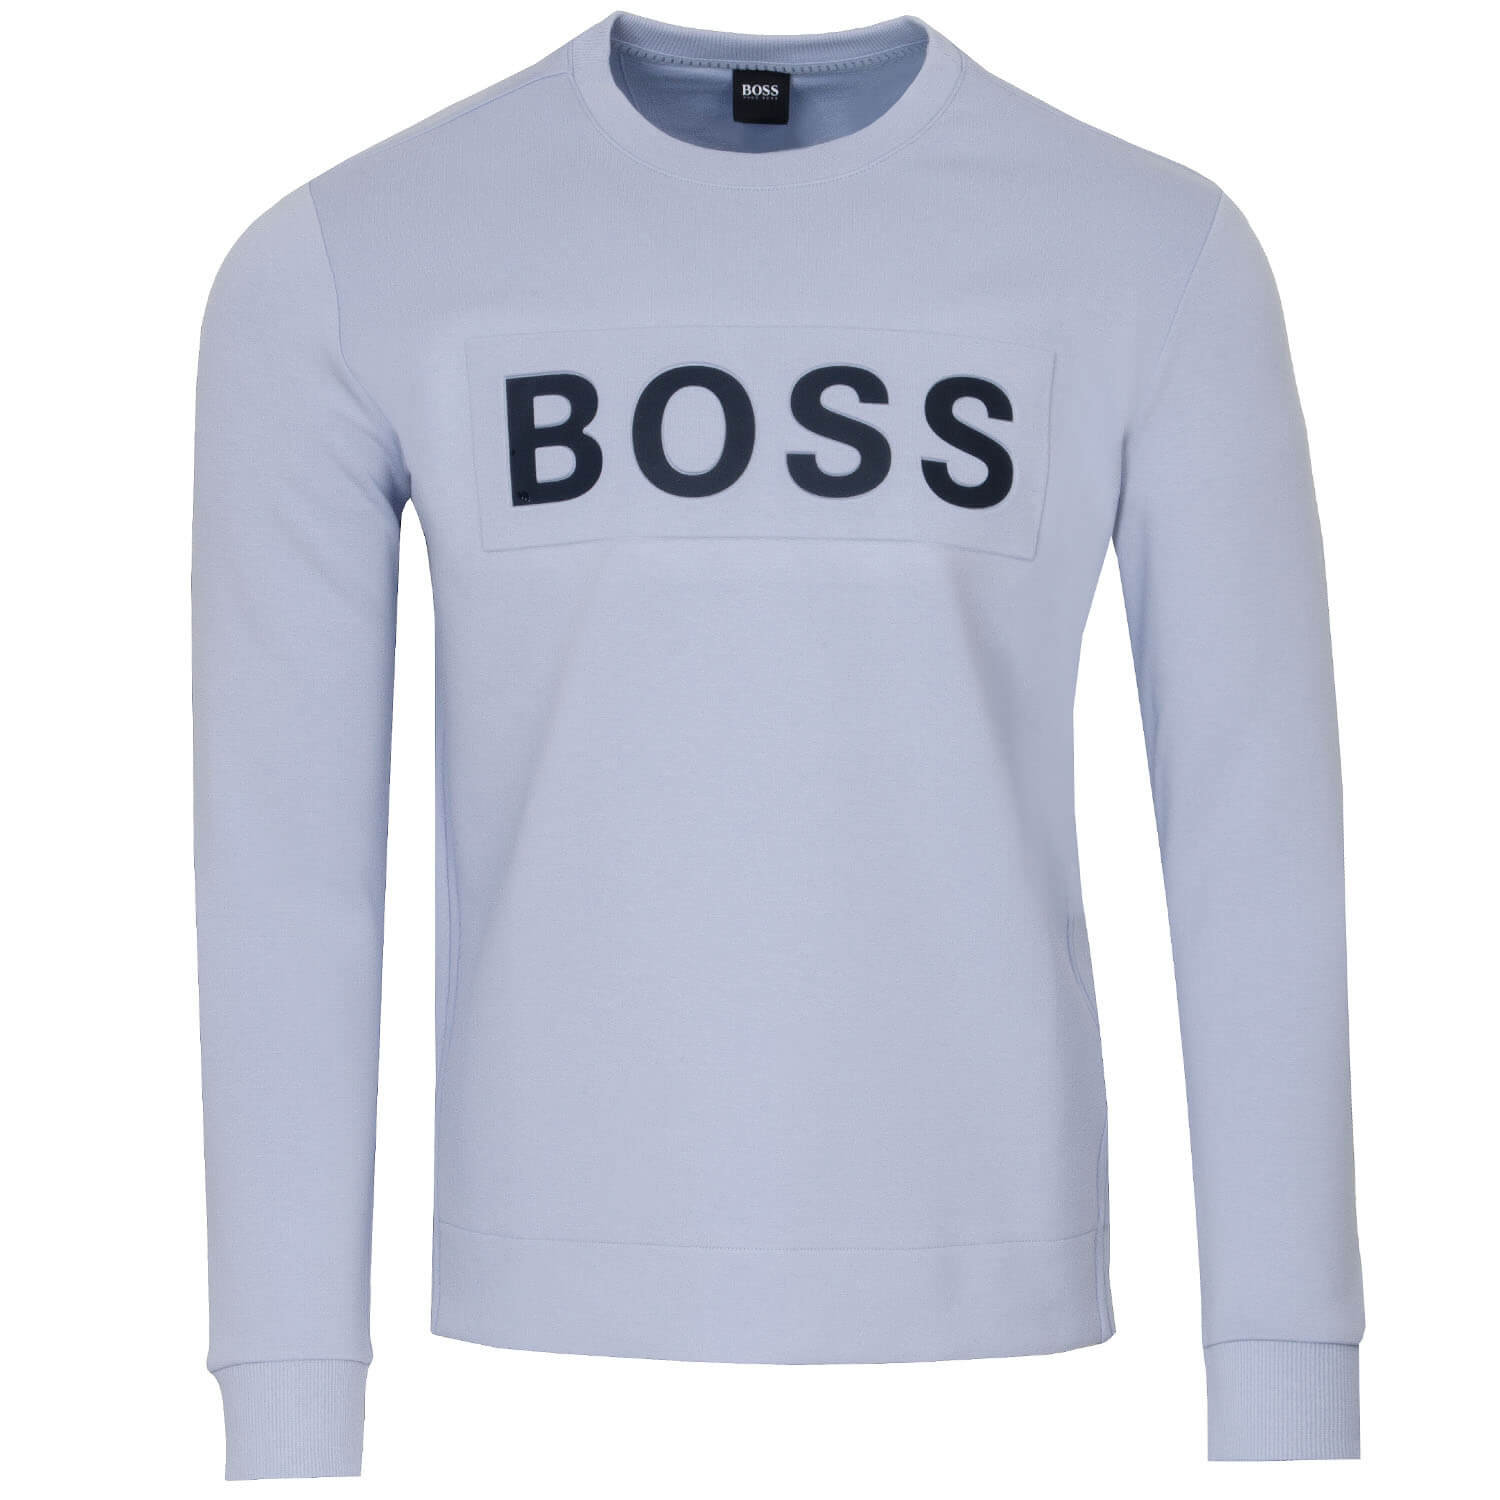 BOSS Salbo 1 Sweatshirt